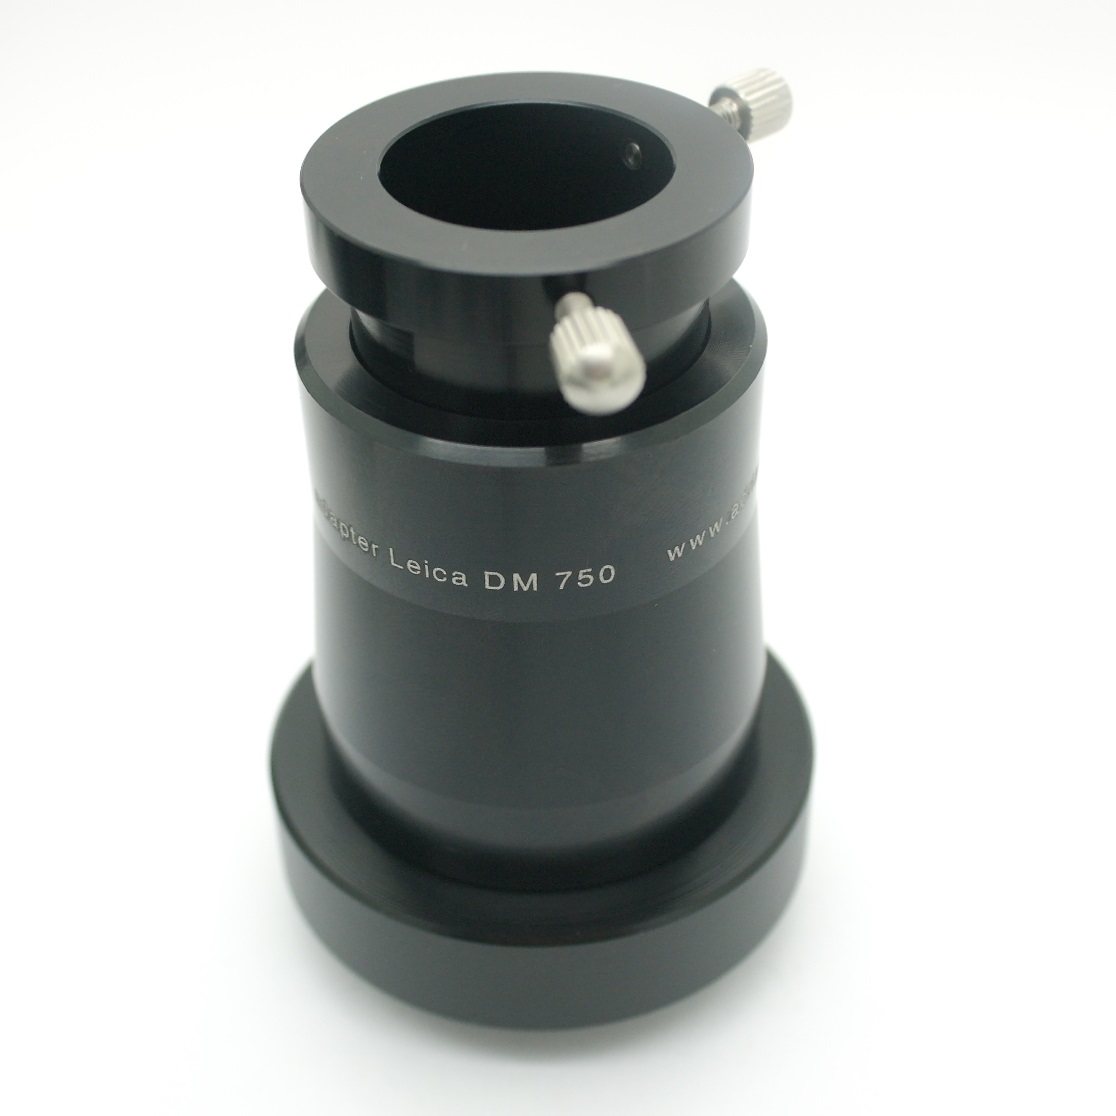 Obiettivo foro stenopeico, pinhole, camera obscura fotocamere telemetro Leica M